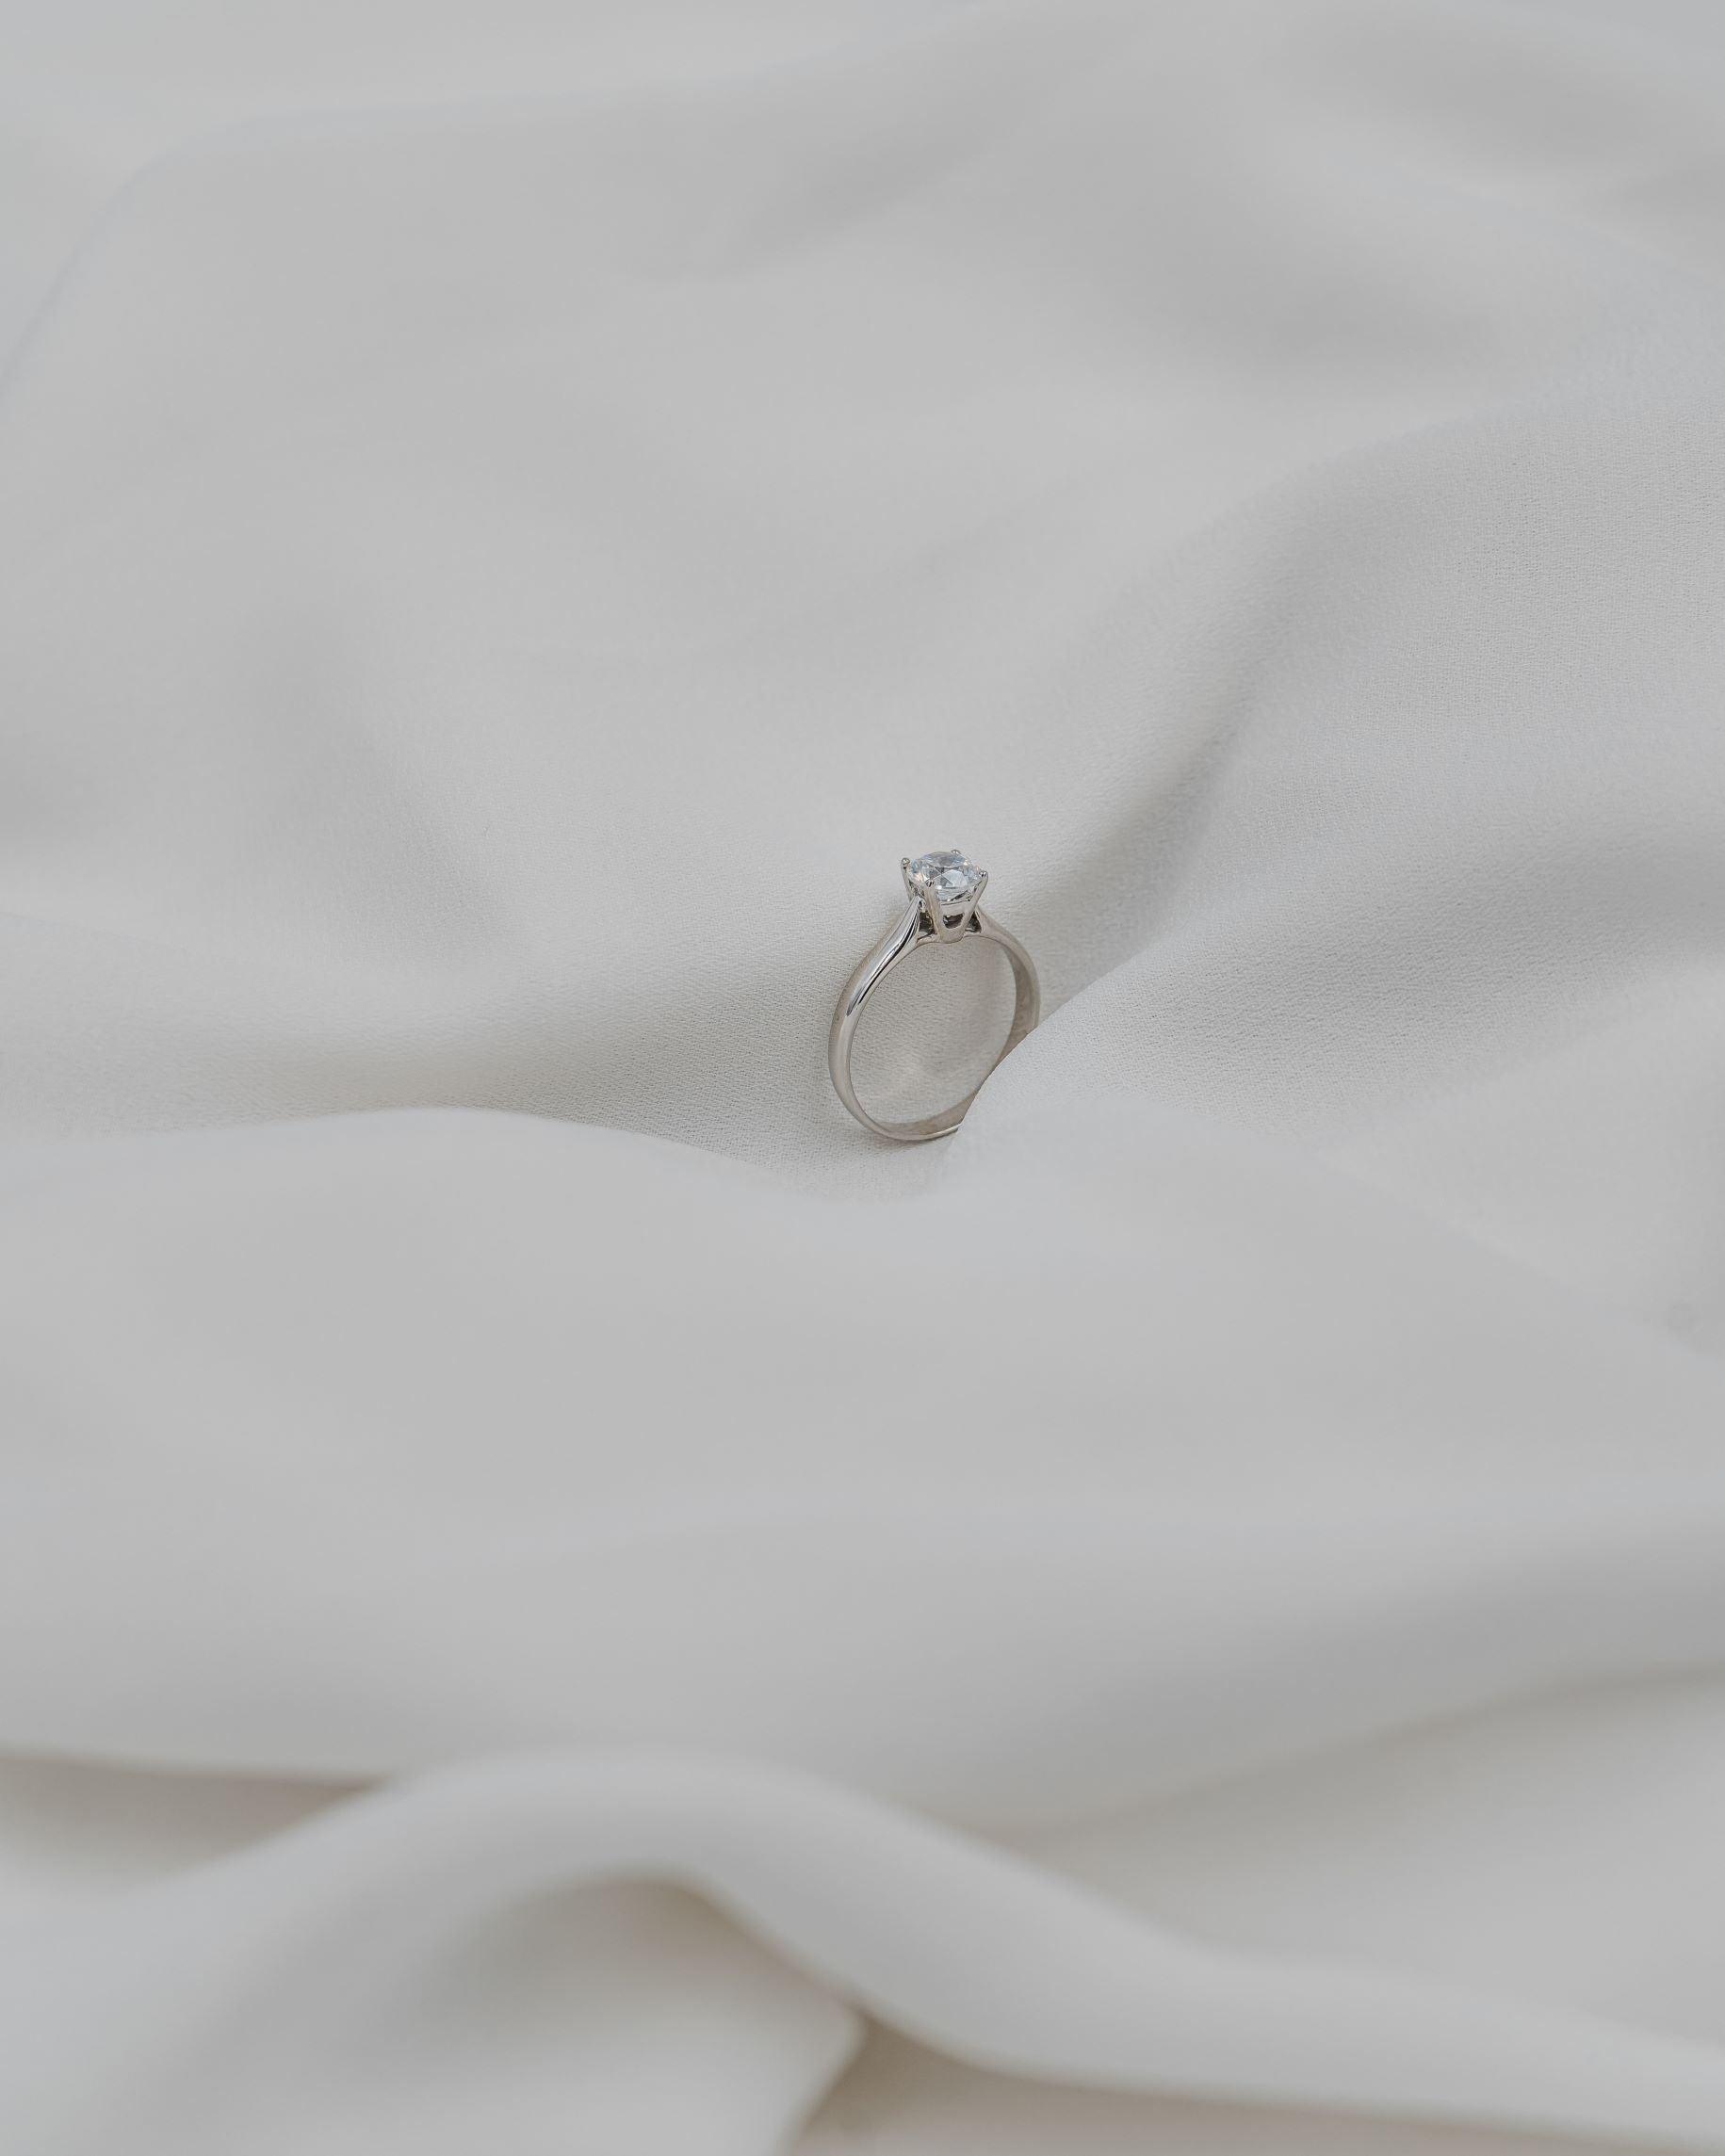 Λευκόχρυσο μονόπετρο δαχτυλίδι με διαμάντι.